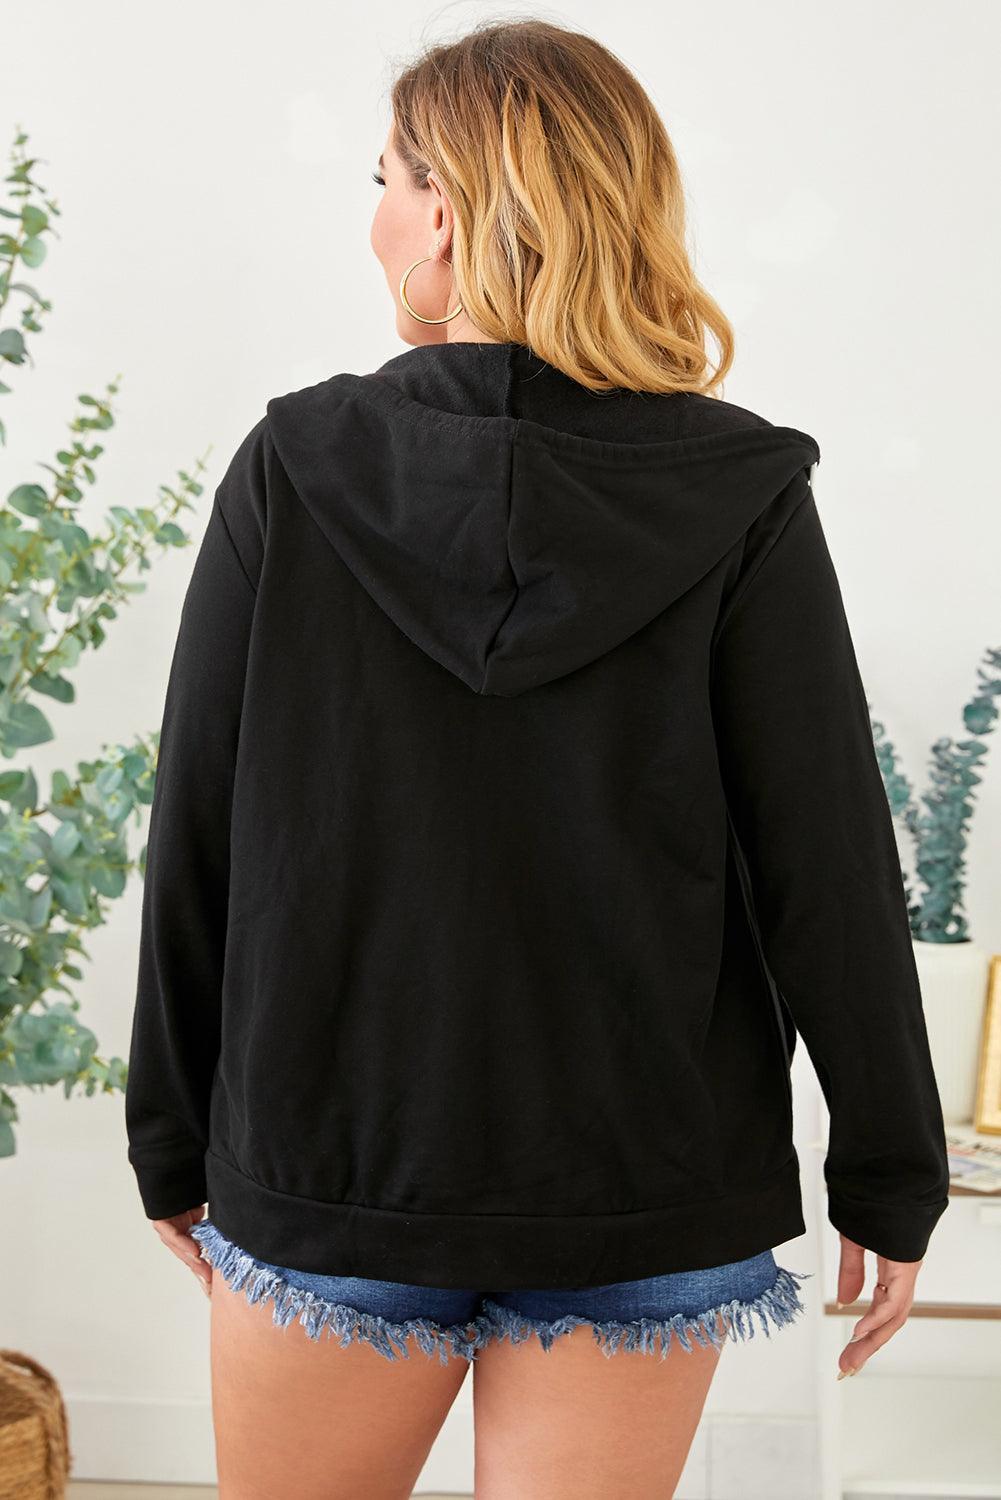 Plus Size Zip-Up Jacket with Adjustable Hood - MXSTUDIO.COM